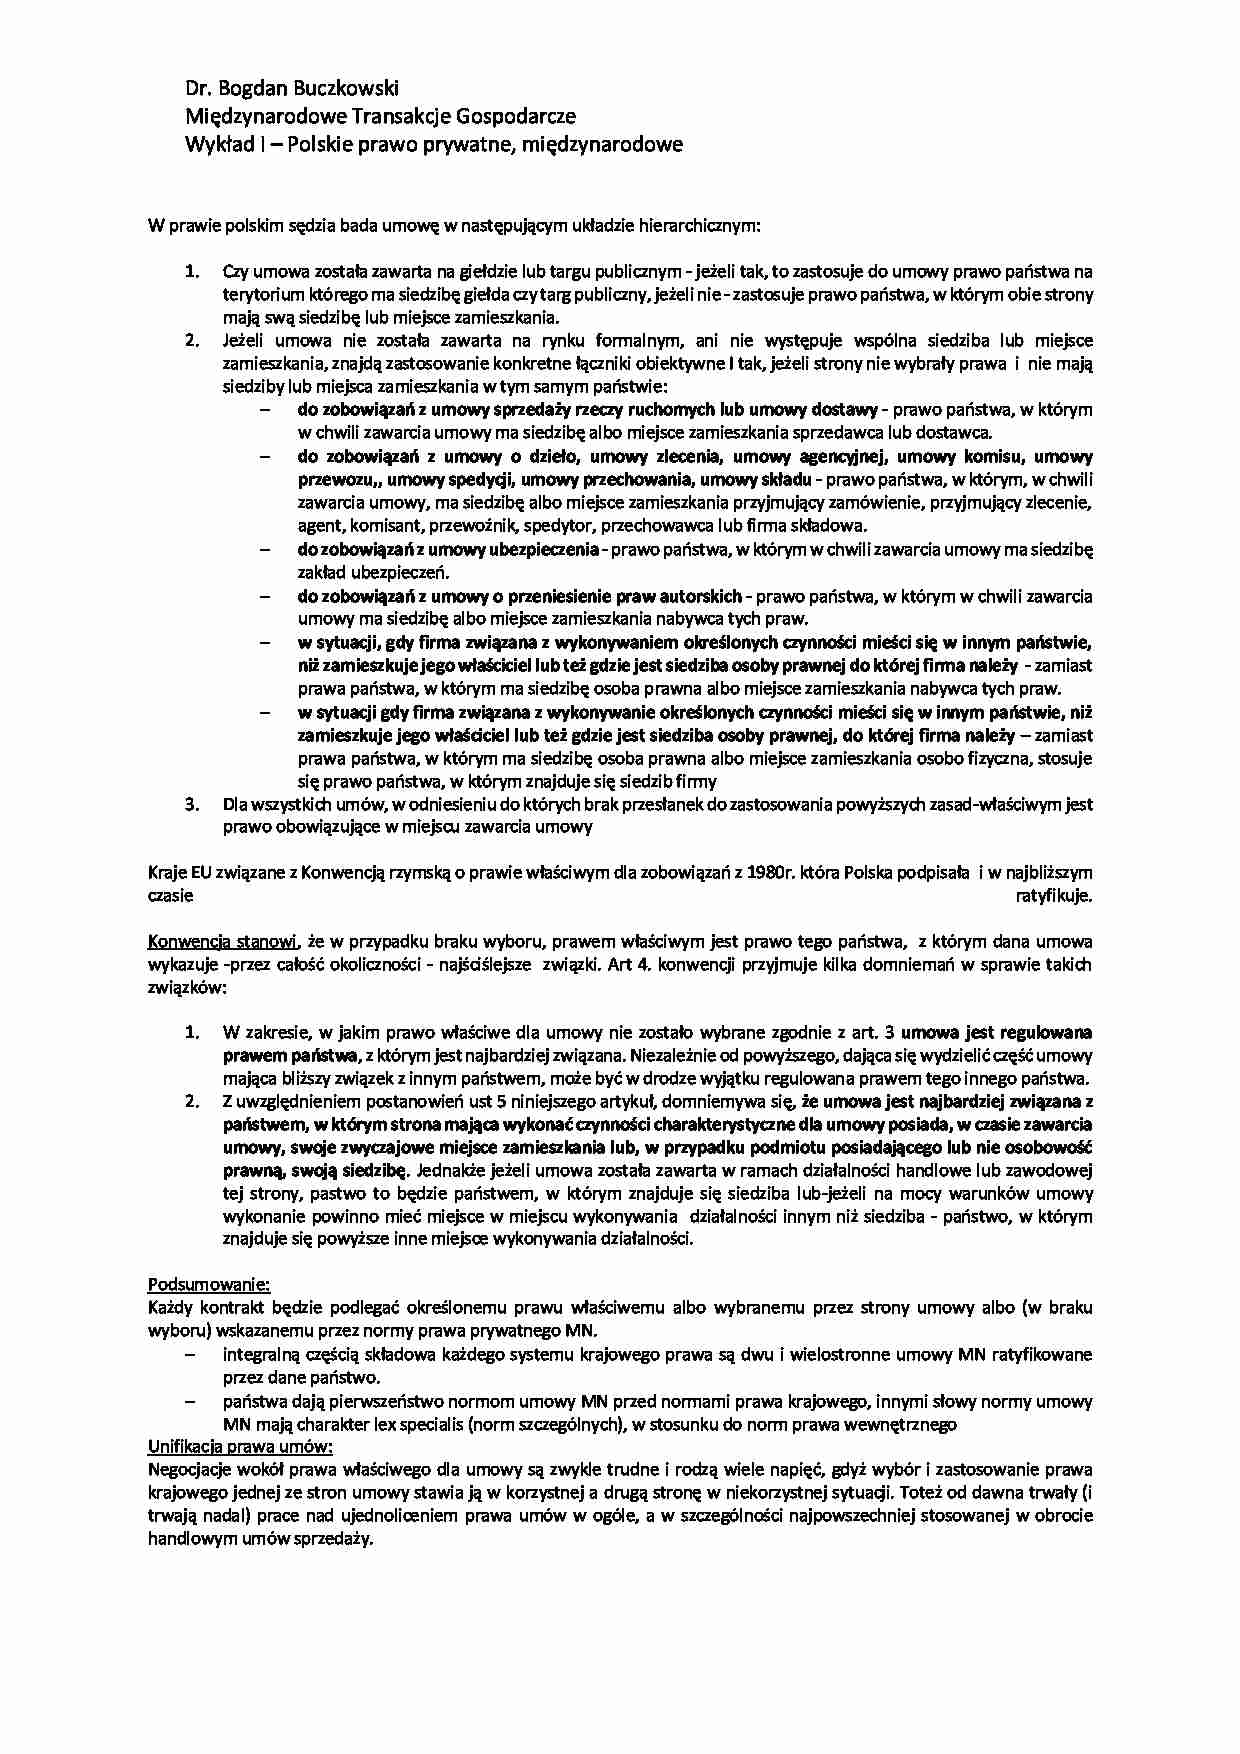 Polskie prawo prywatne, międzynarodowe - wykład - strona 1